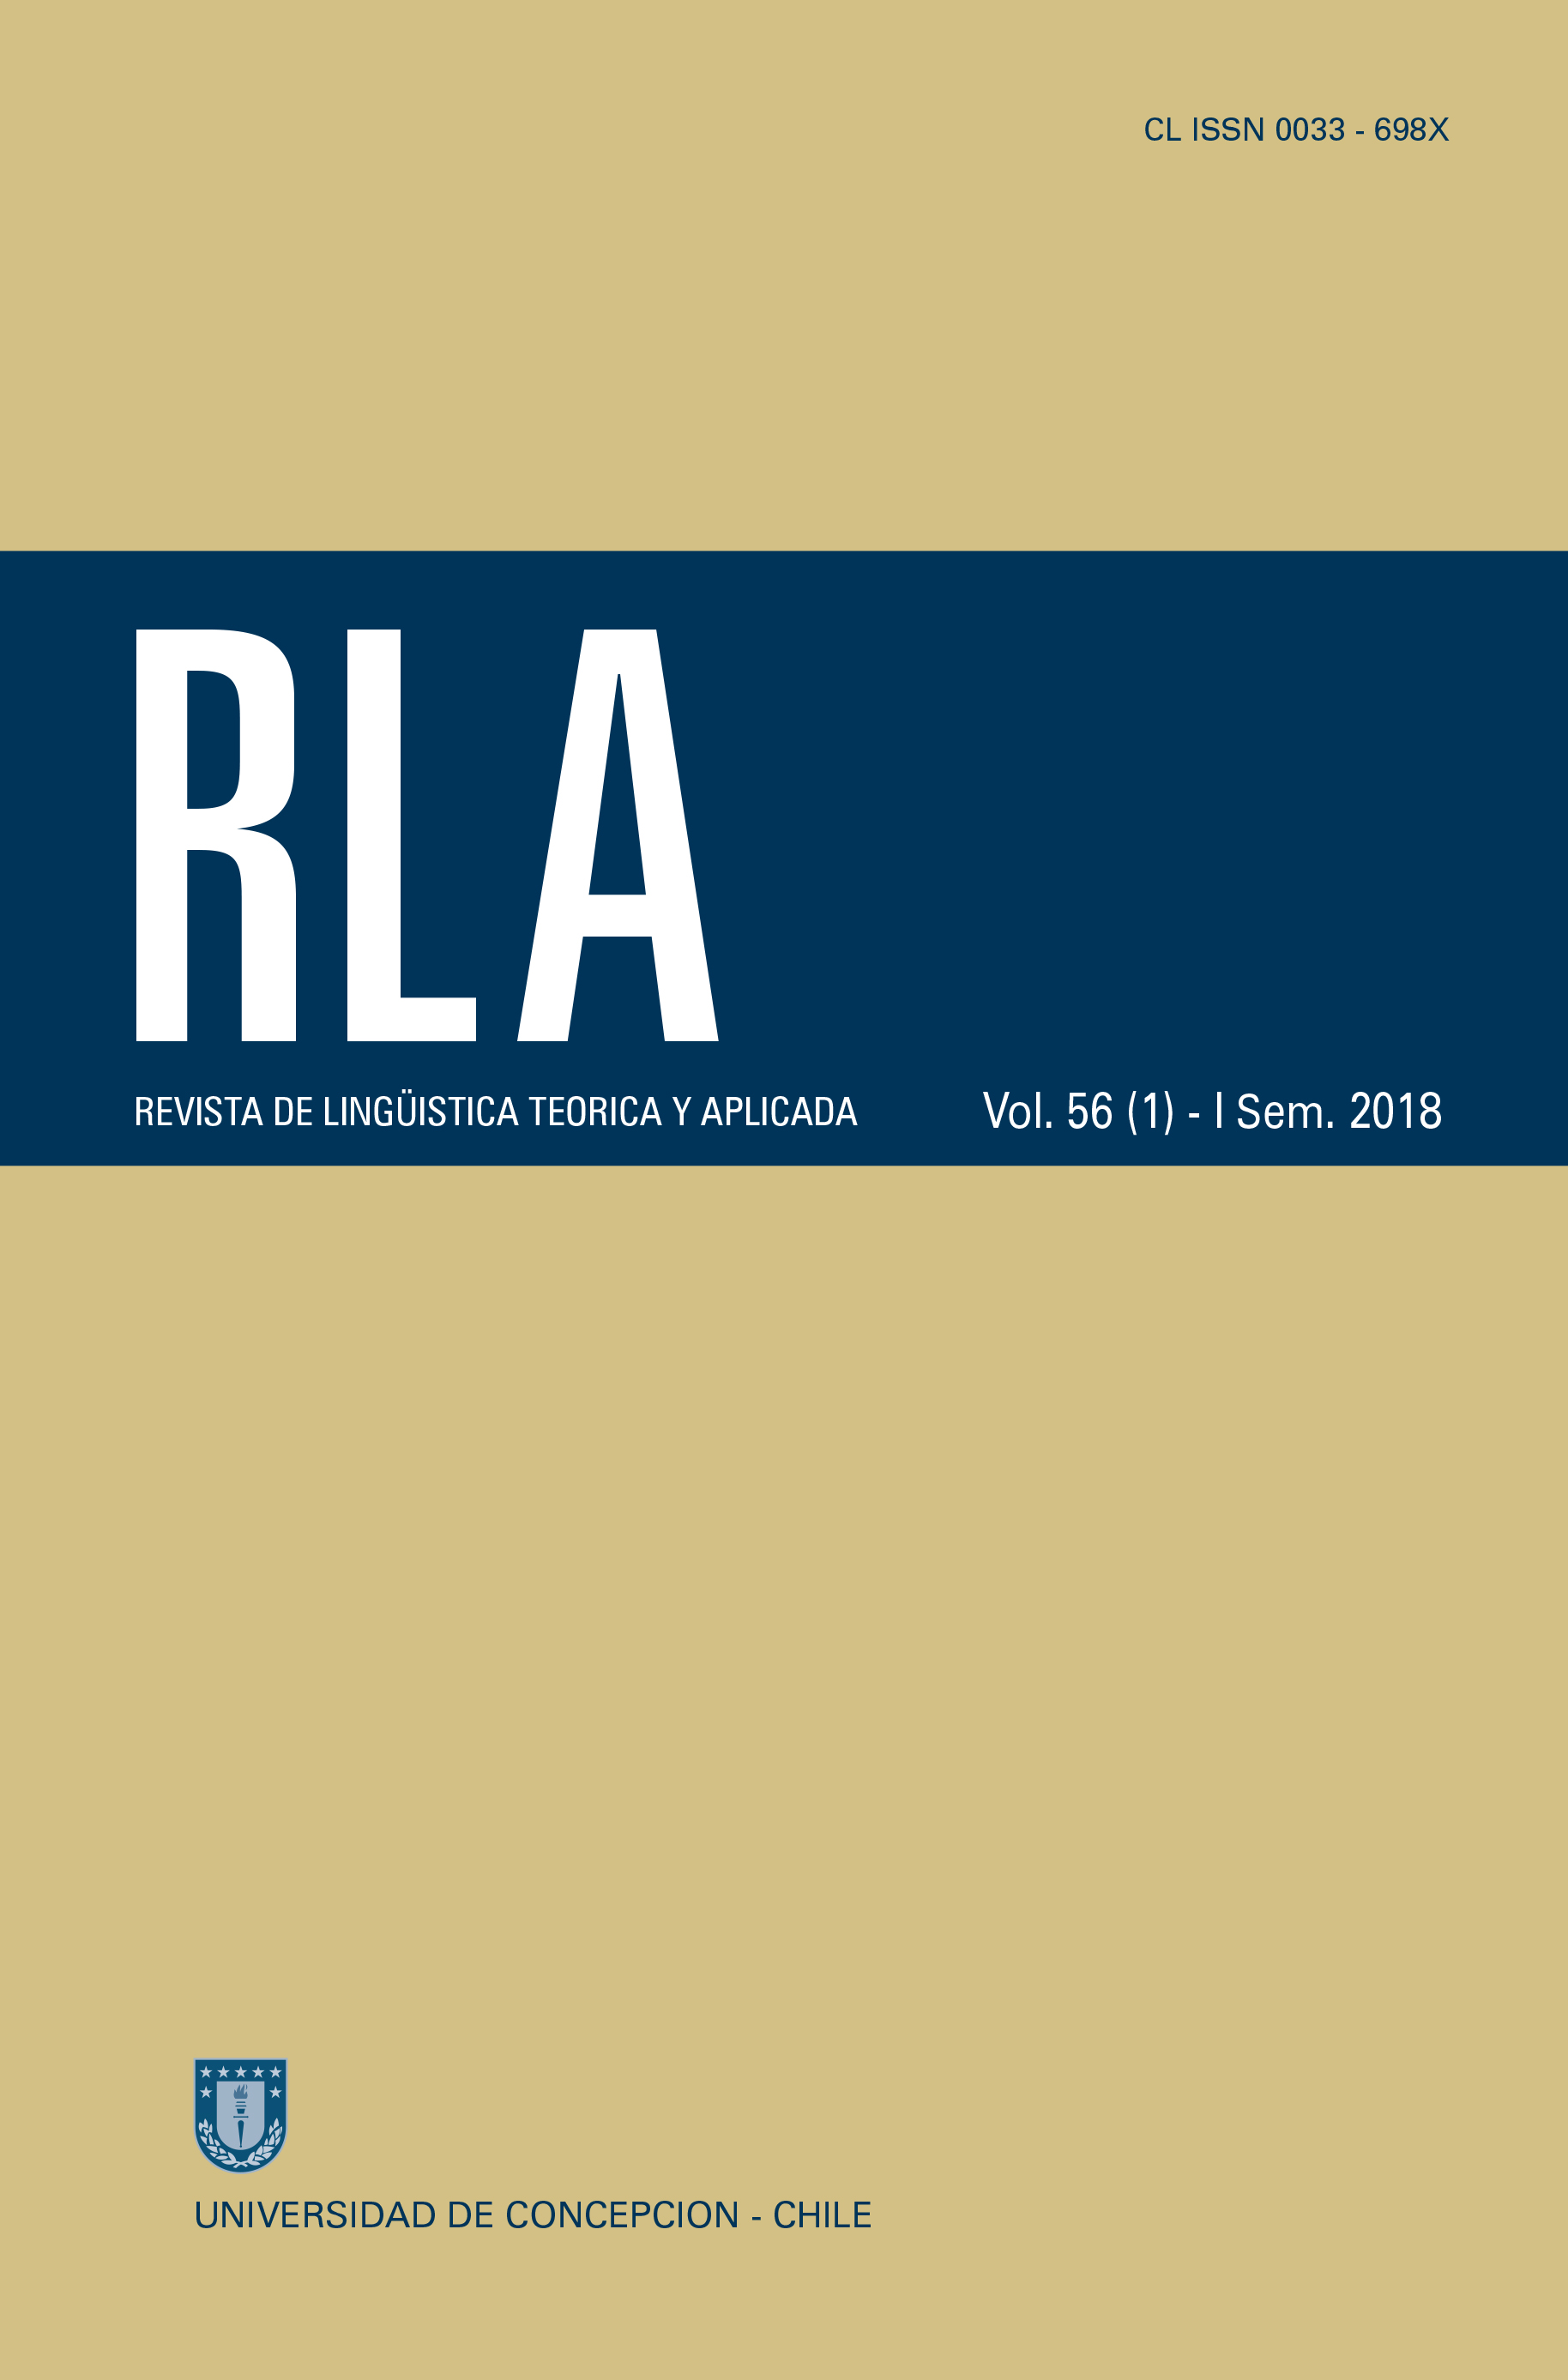 Revista de Linguística Teórica y Aplicada Vol. 56 N°1 (2018)